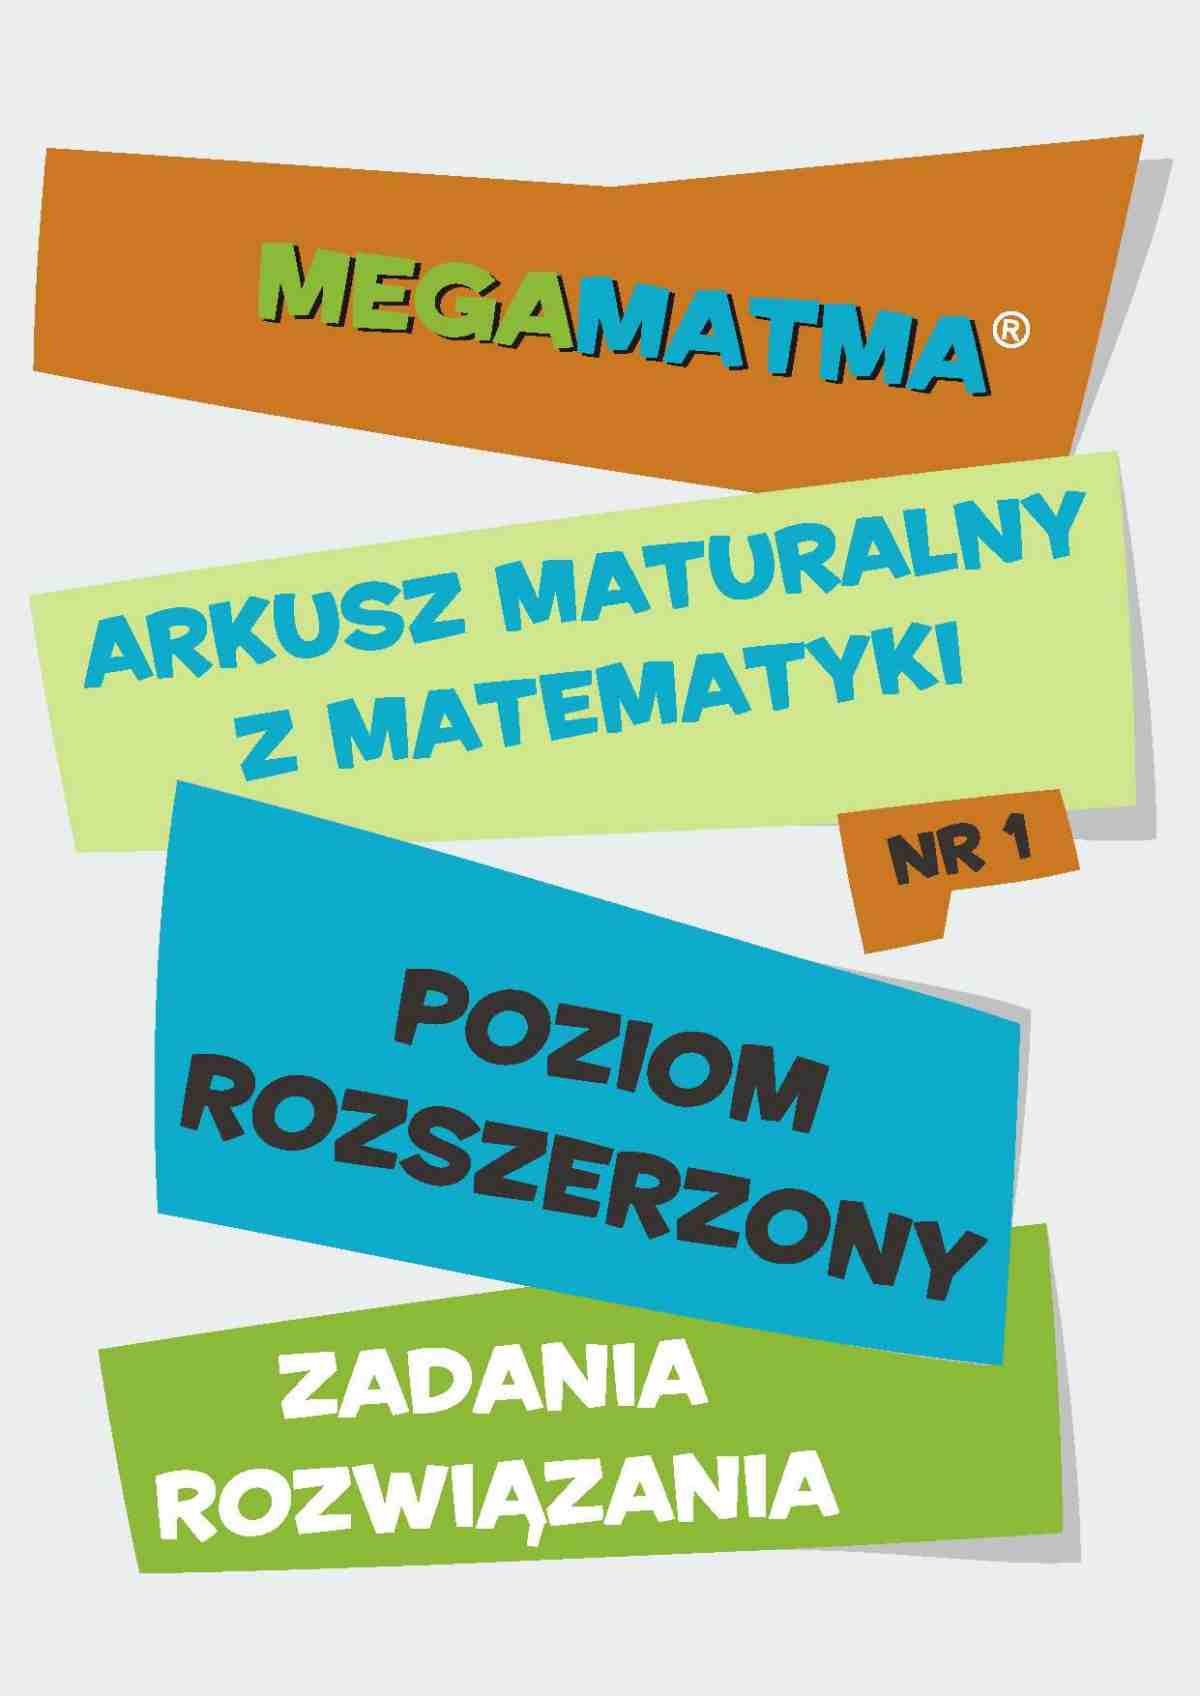 Okładka:Matematyka-Arkusz maturalny. MegaMatma nr 1. Poziom rozszerzony. Zadania z rozwiązaniami. 